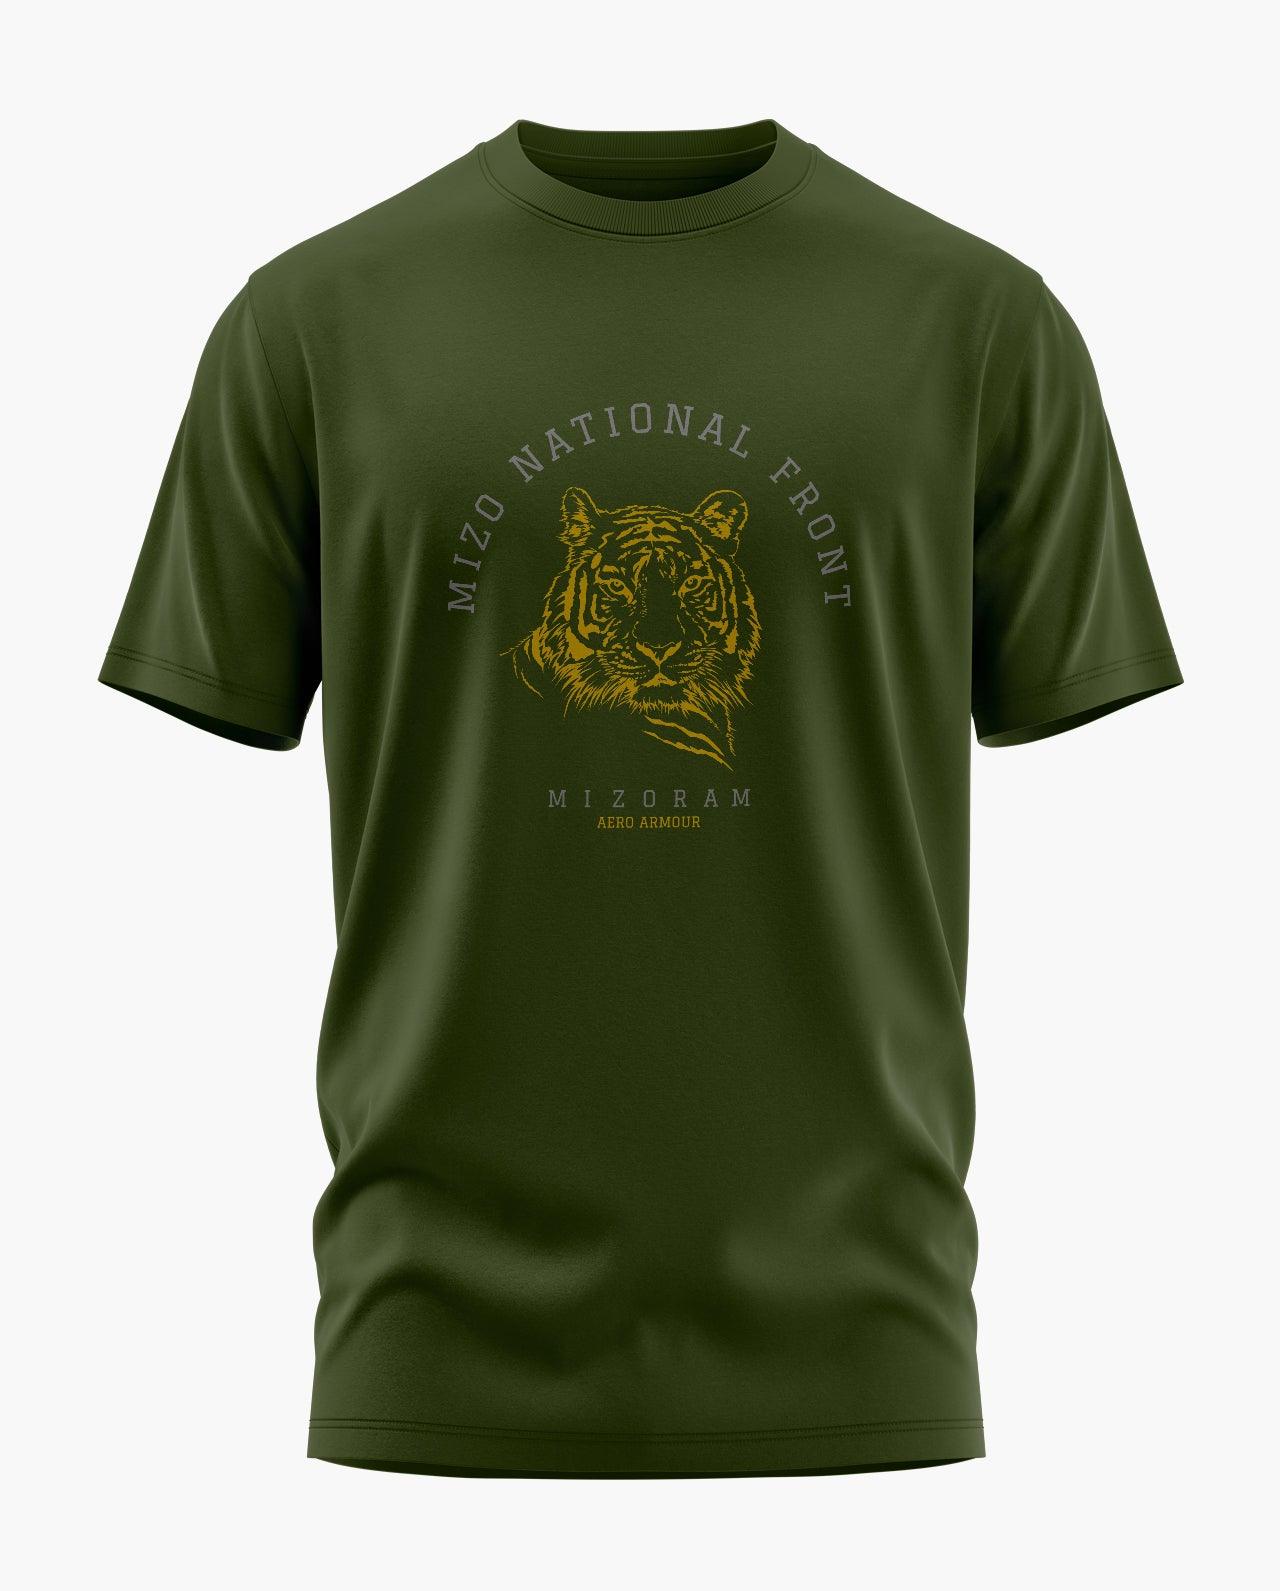 Mizo National Front T-Shirt - Aero Armour